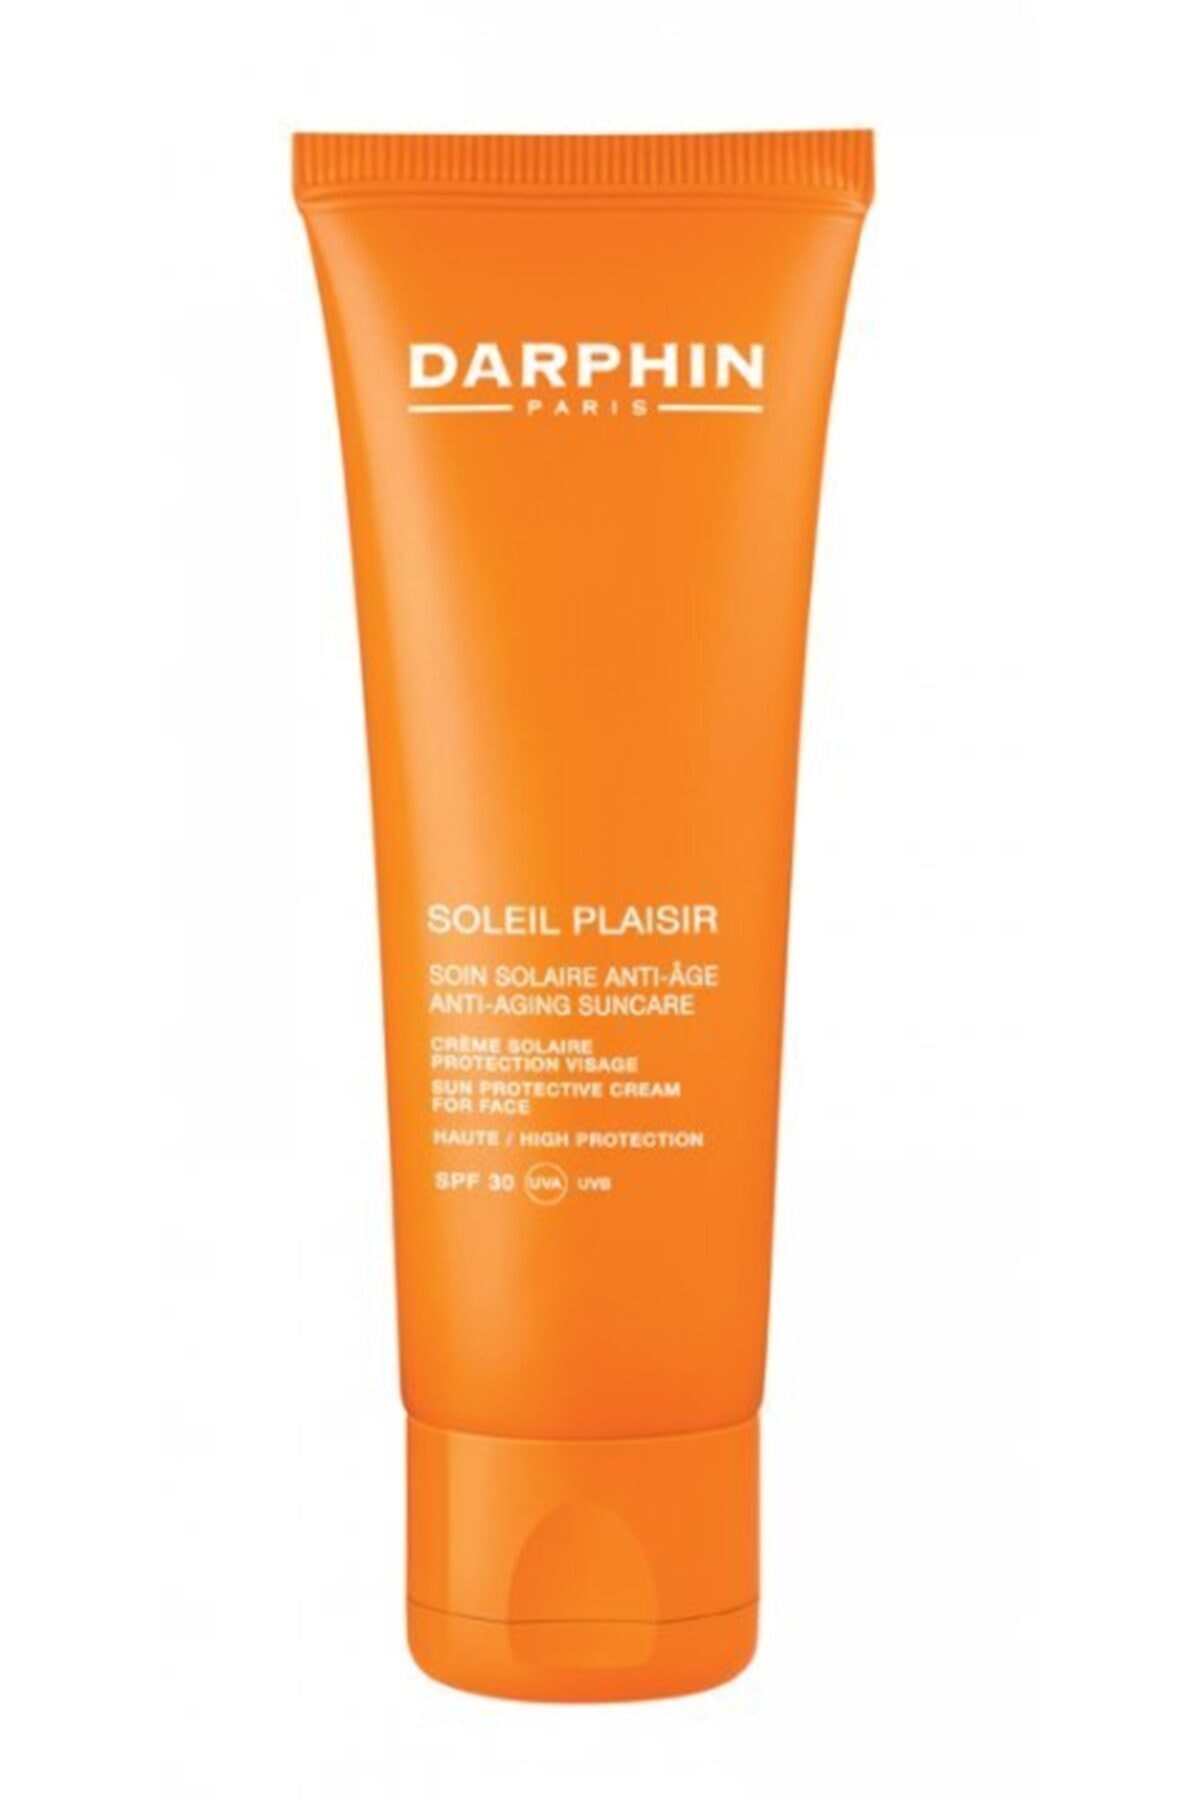 Darphin Soleil Plaisir Anti-aging Spf 30 50 ml